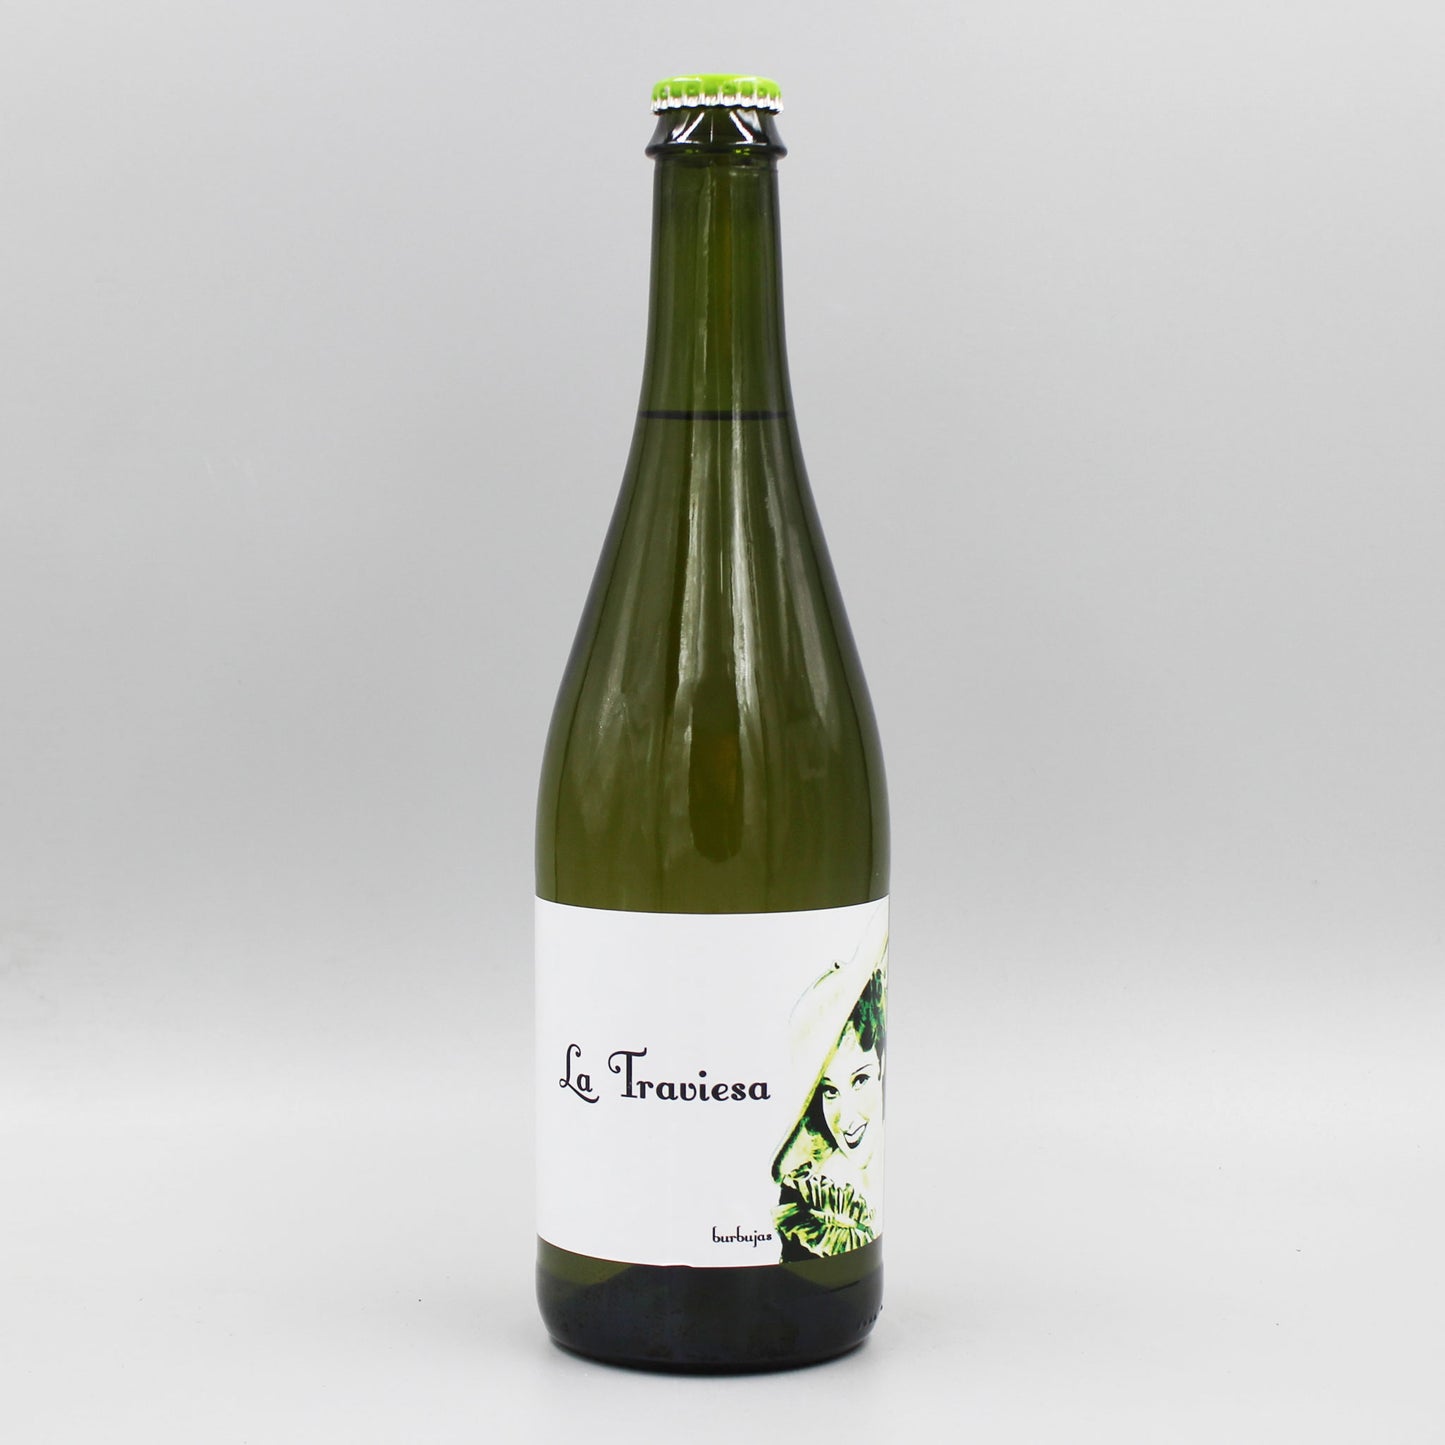 [スペインワイン]バランコ オスクーロ ラ トラヴィエサ ブルブハス 2021 白泡 750ml